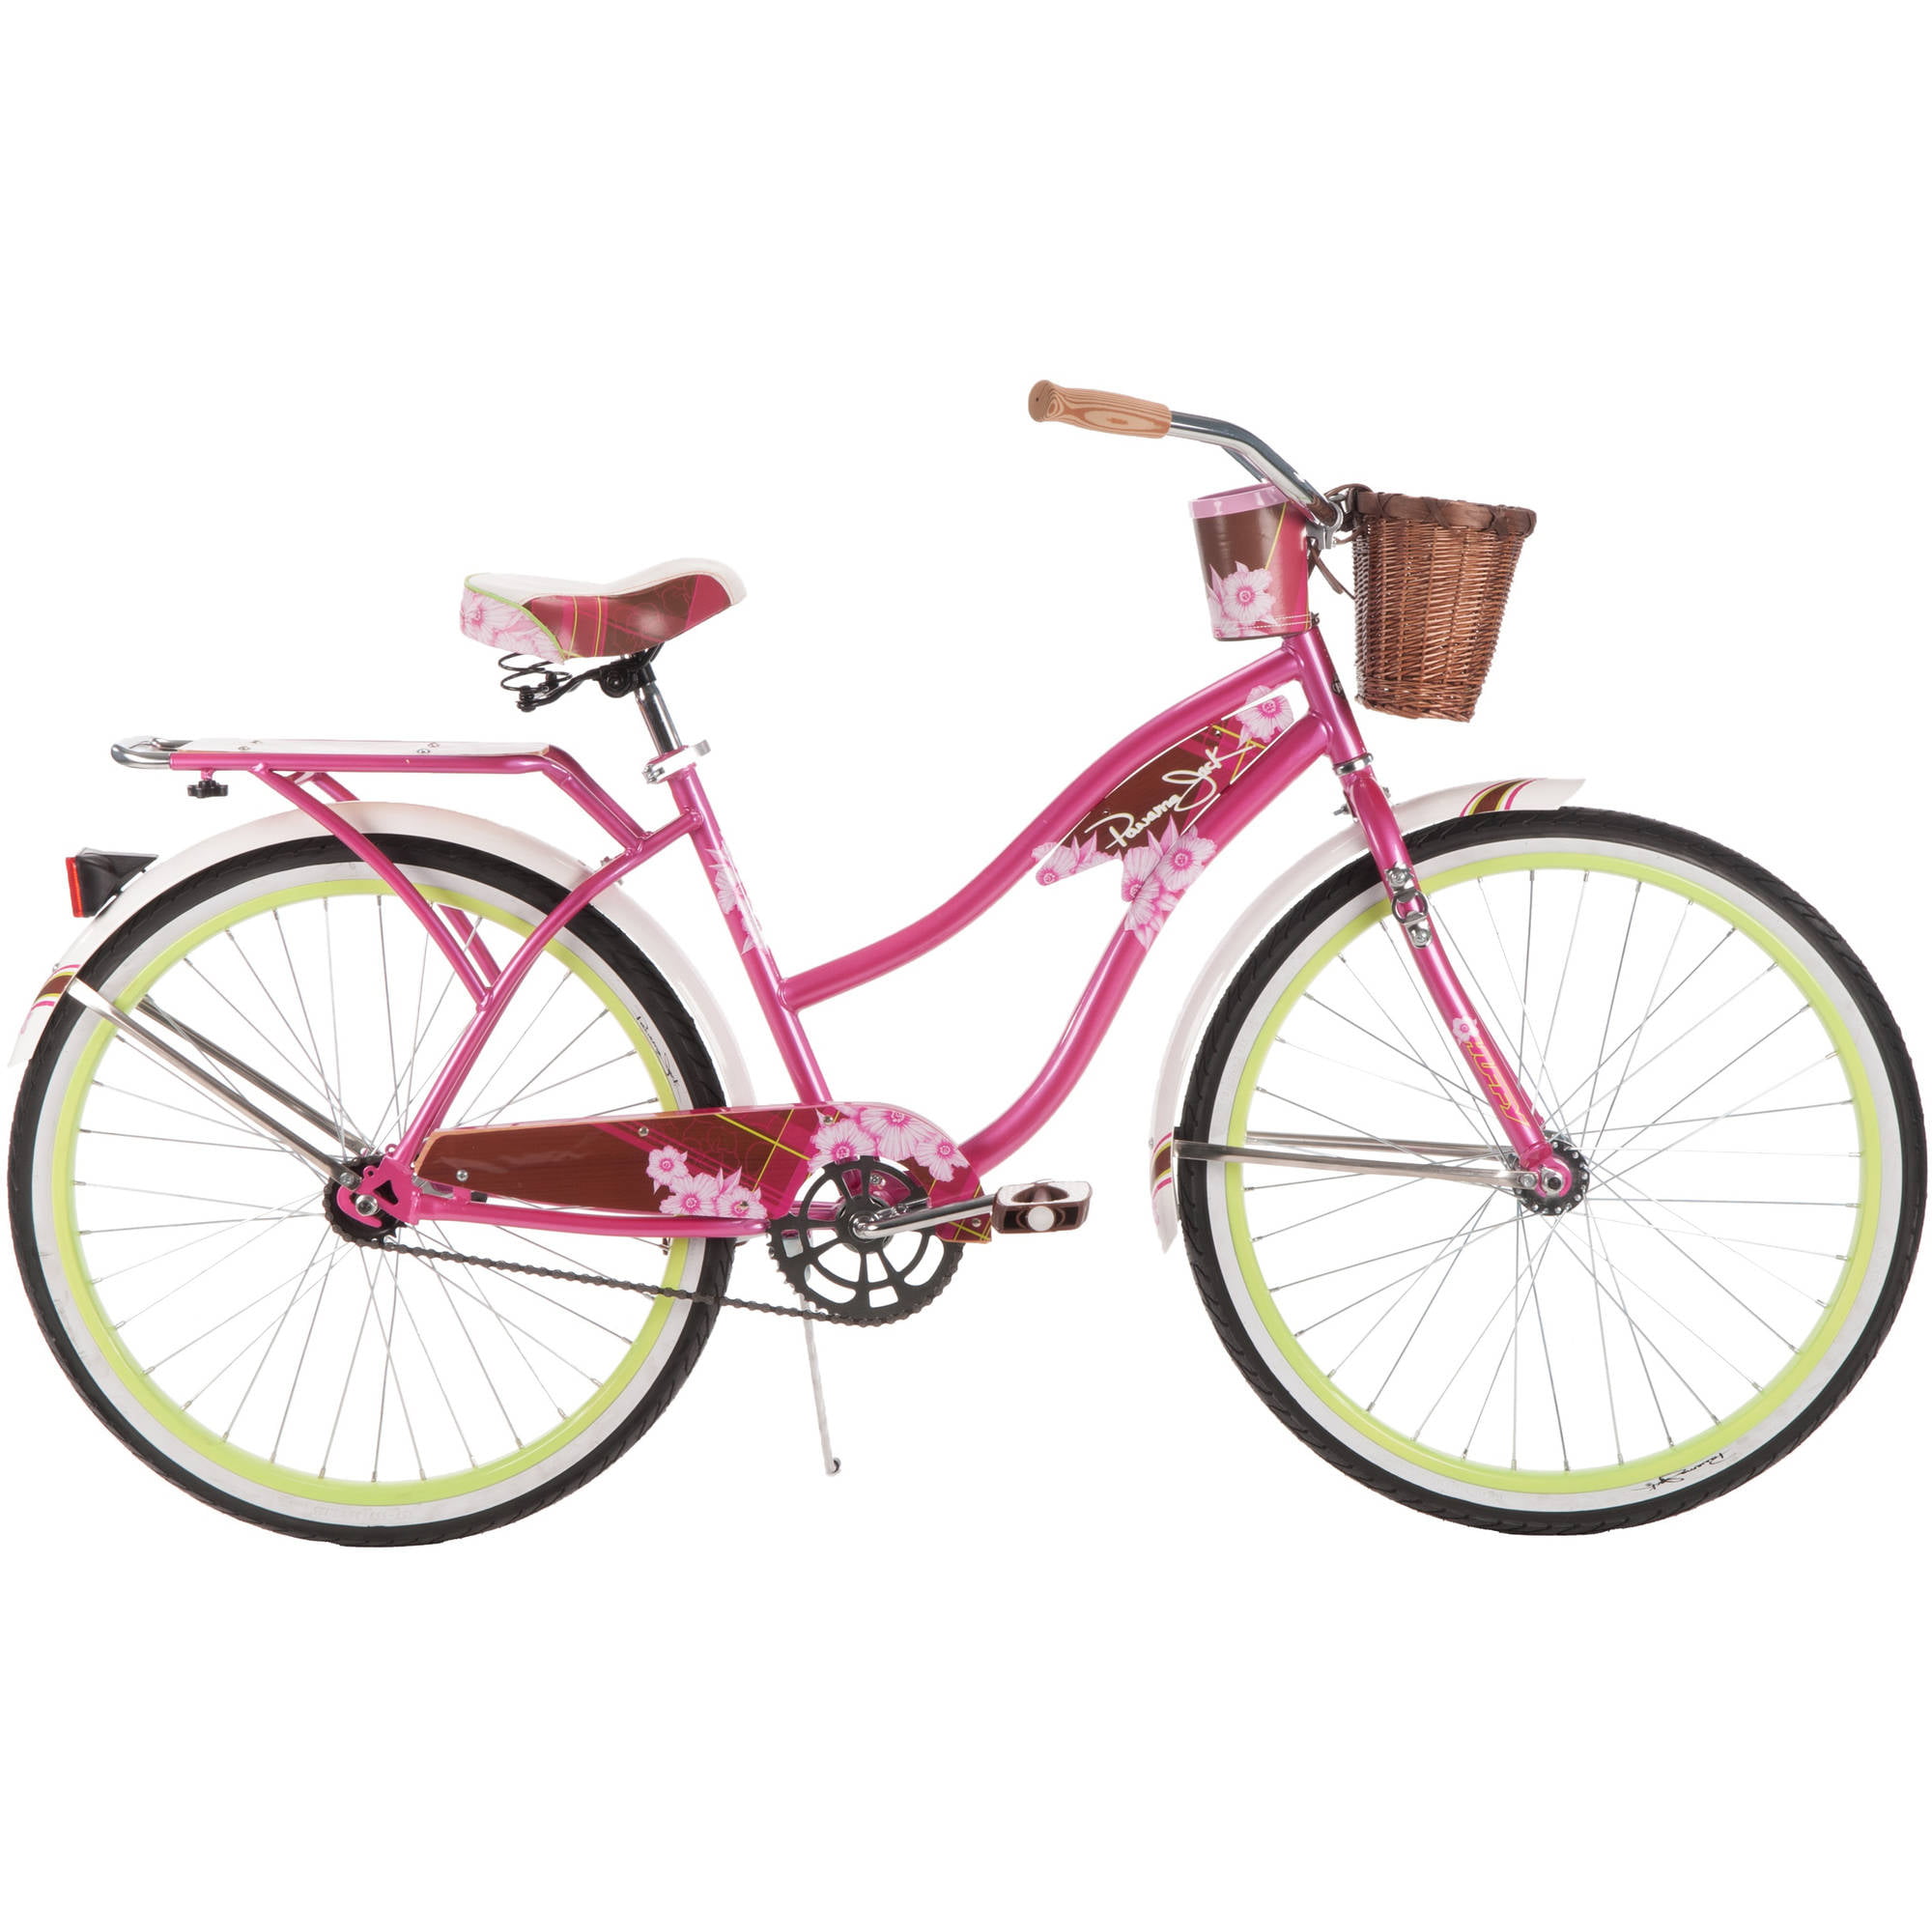 Black Cruiser Bike Huffy 26” Women Comfort City Beach Commuter Pink Bicycle New! 